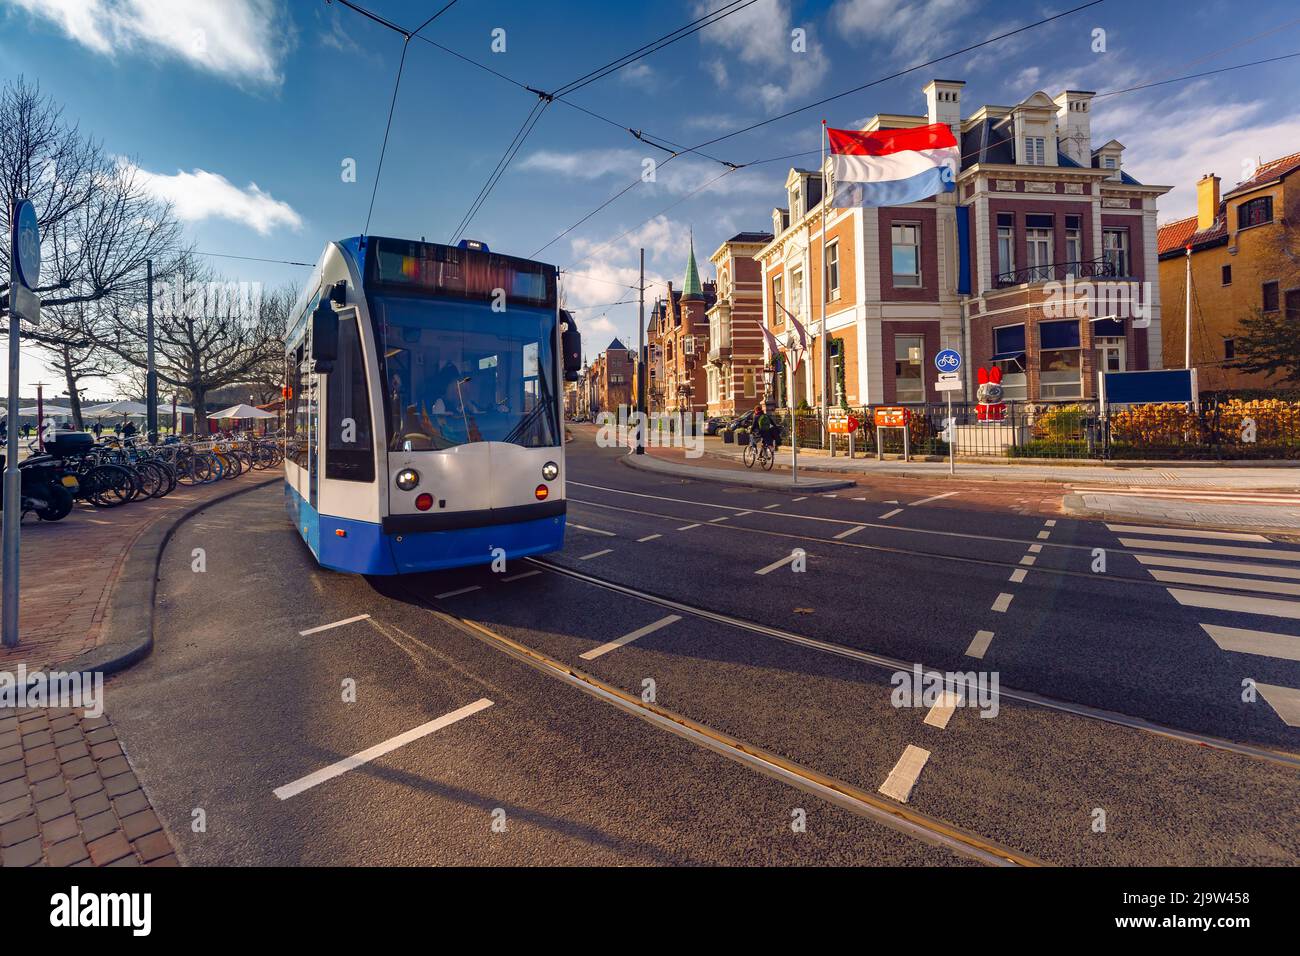 Amsterdam tram, bandiera olandese sullo sfondo di case tipiche olandesi, Olanda, Paesi Bassi. Foto Stock